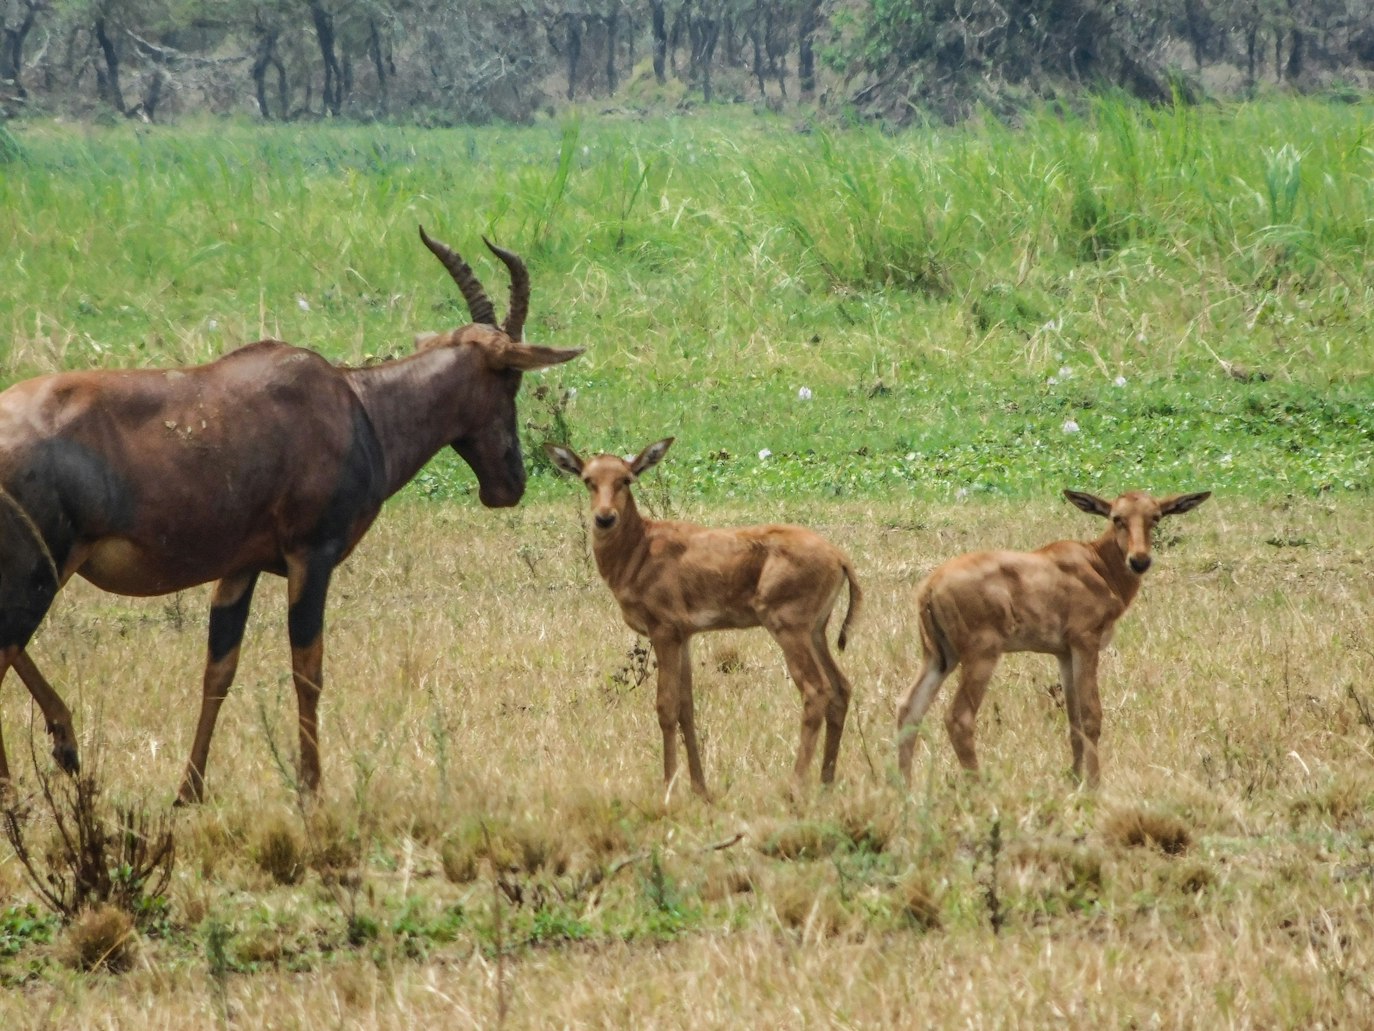 safaris in rwanda from denmark